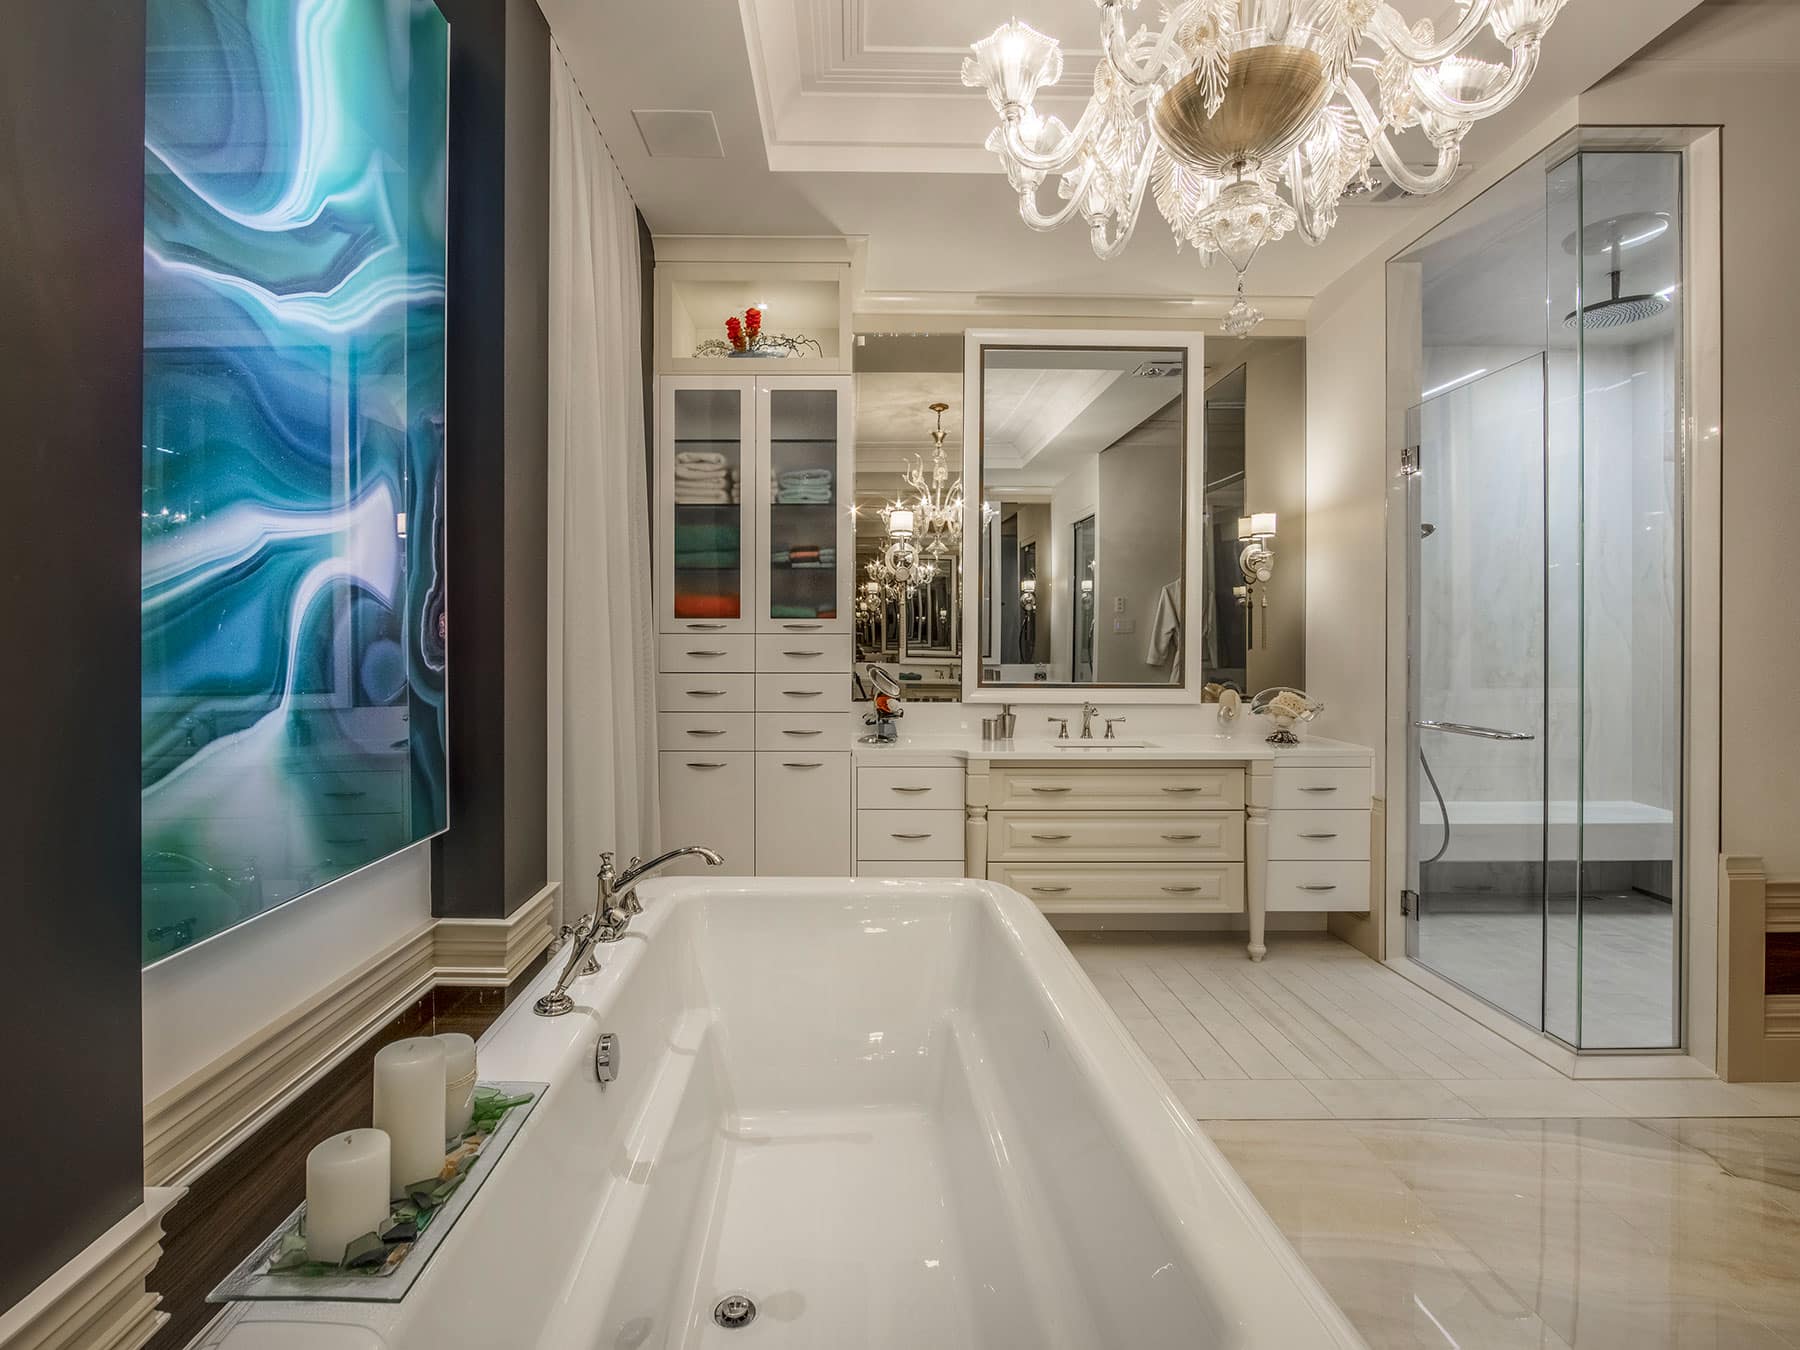 Plan d’aménagement d’une salle de bain à Québec et design des armoires et de la vanité de style Classique